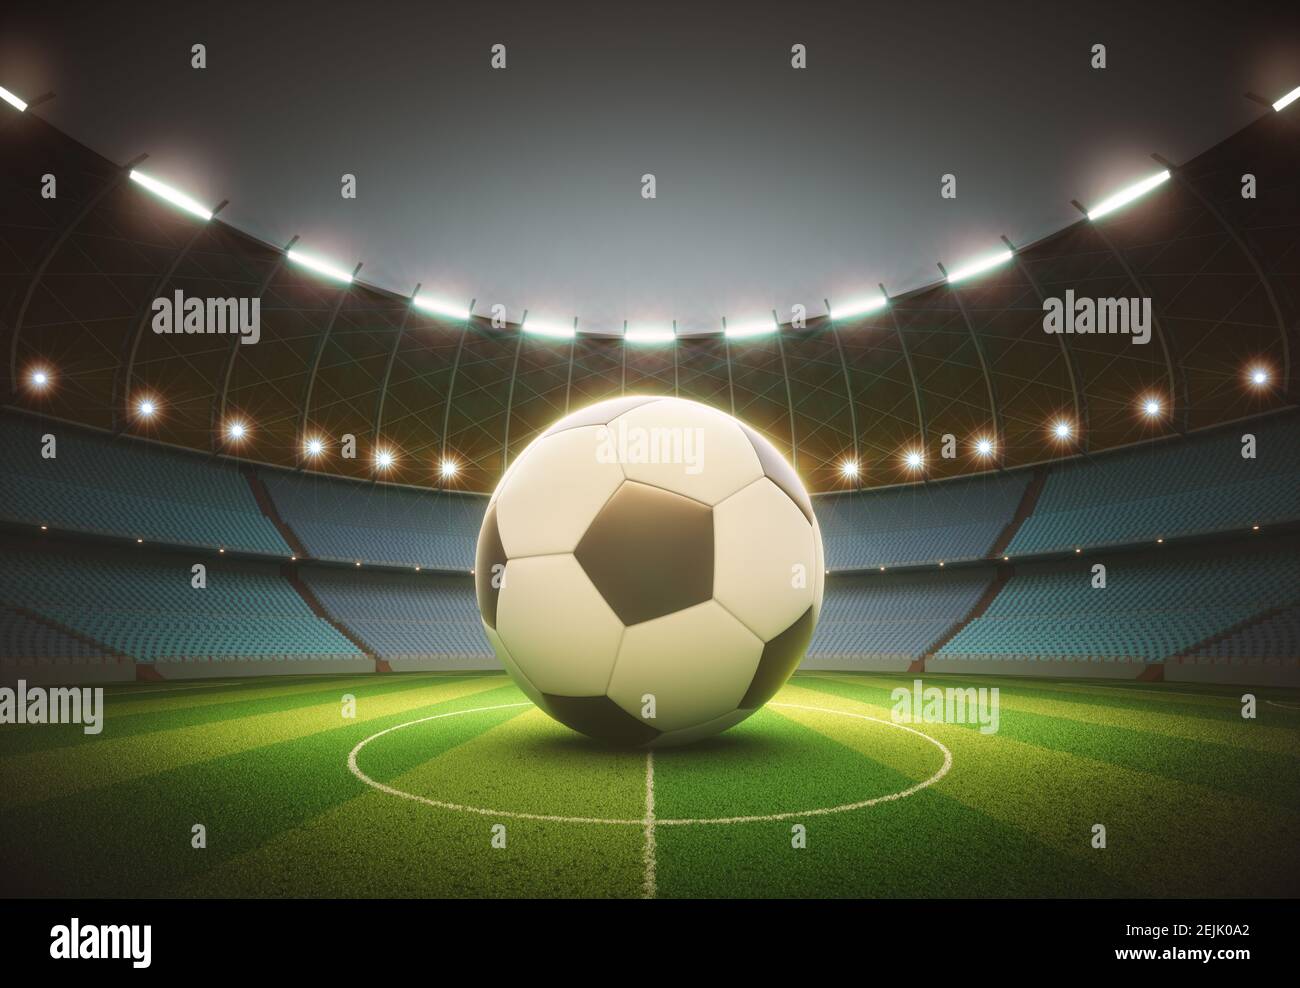 Des spots éclairant le ballon de football au centre. Illustration 3D avec masque sur la bille incluse. Banque D'Images